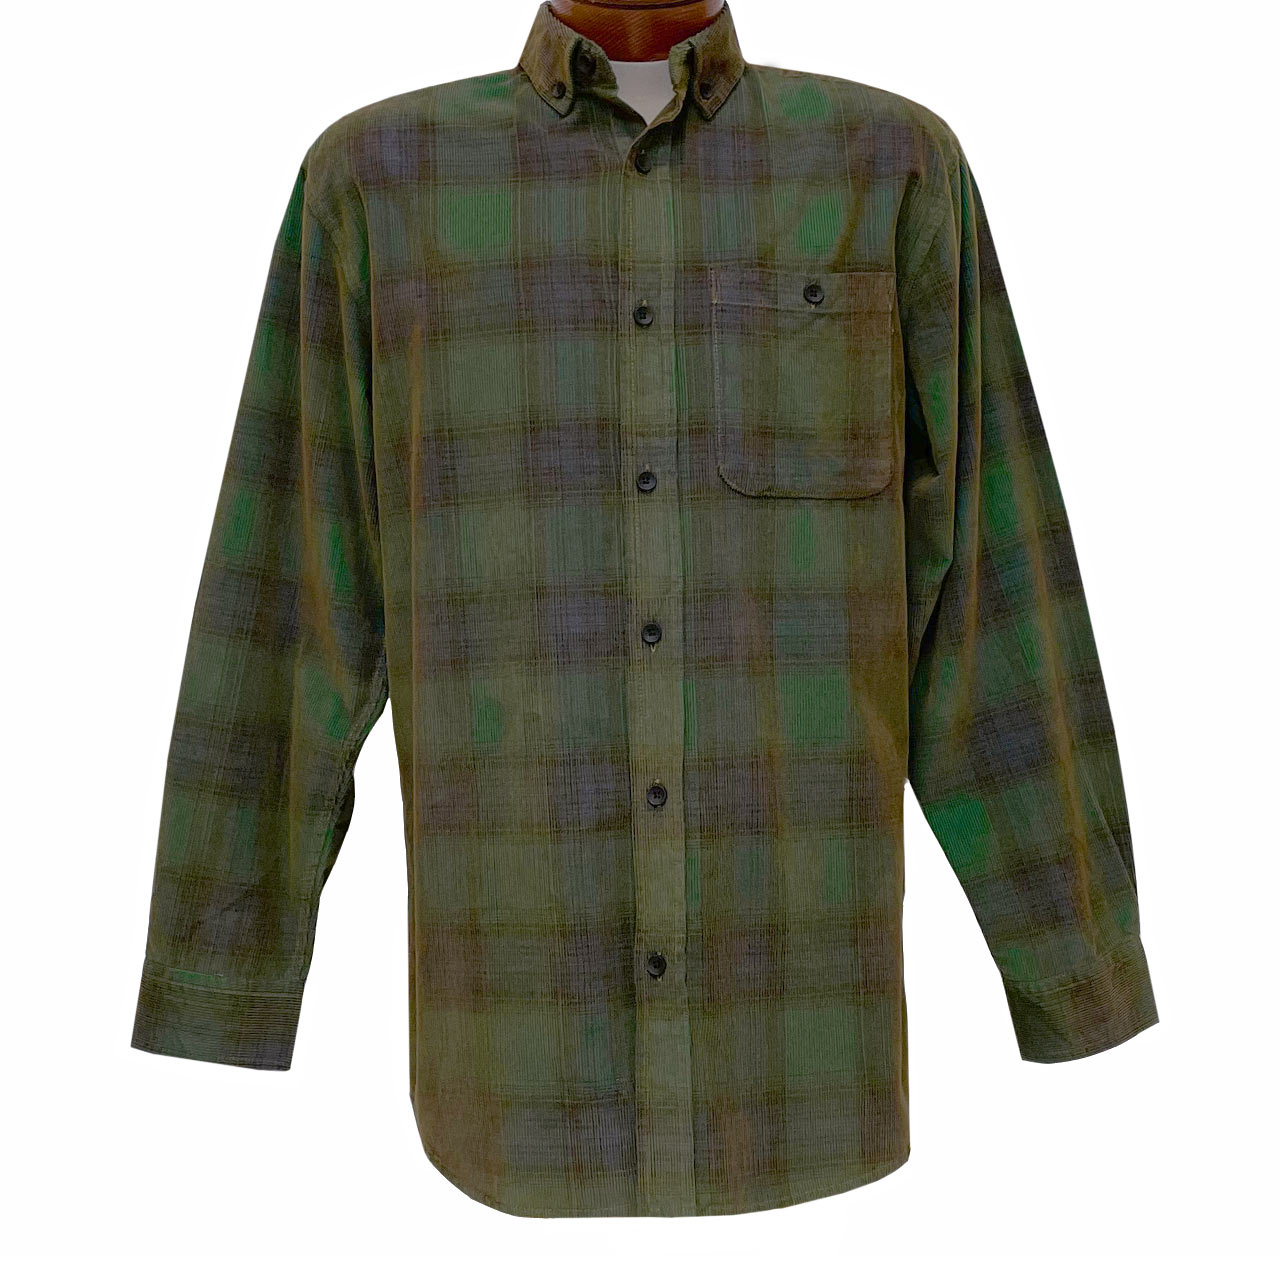 Men's R. Options Corduroy Long Sleeve Yarn Dyed Plaid Shirt, #81043-44B Hunter/Navy